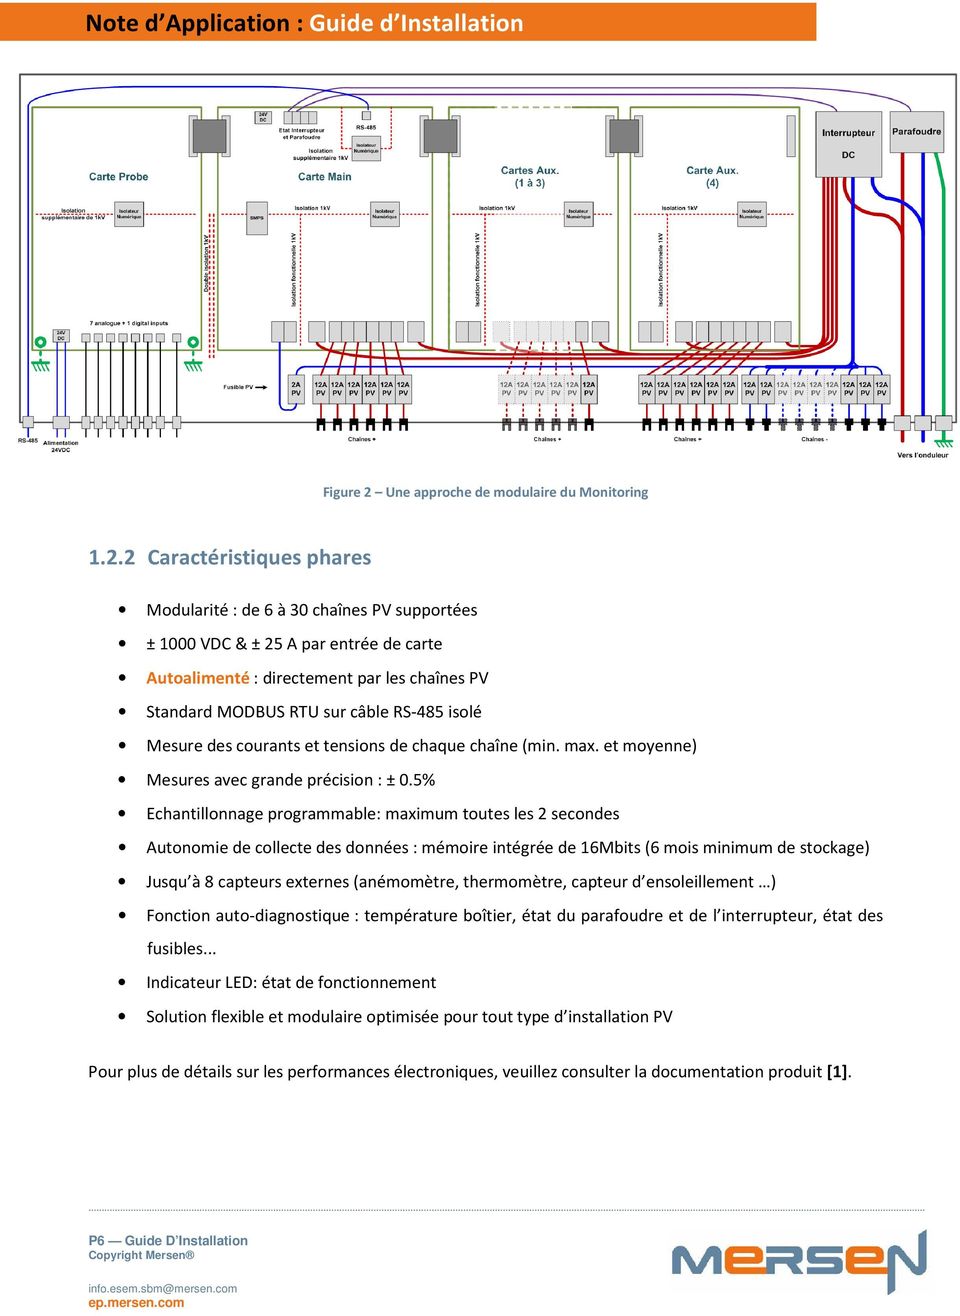 2 Caractéristiques phares Modularité : de 6 à 30 chaînes PV supportées ± 1000 VDC & ± 25 A par entrée de carte Autoalimenté : directement par les chaînes PV Standard MODBUS RTU sur câble RS-485 isolé